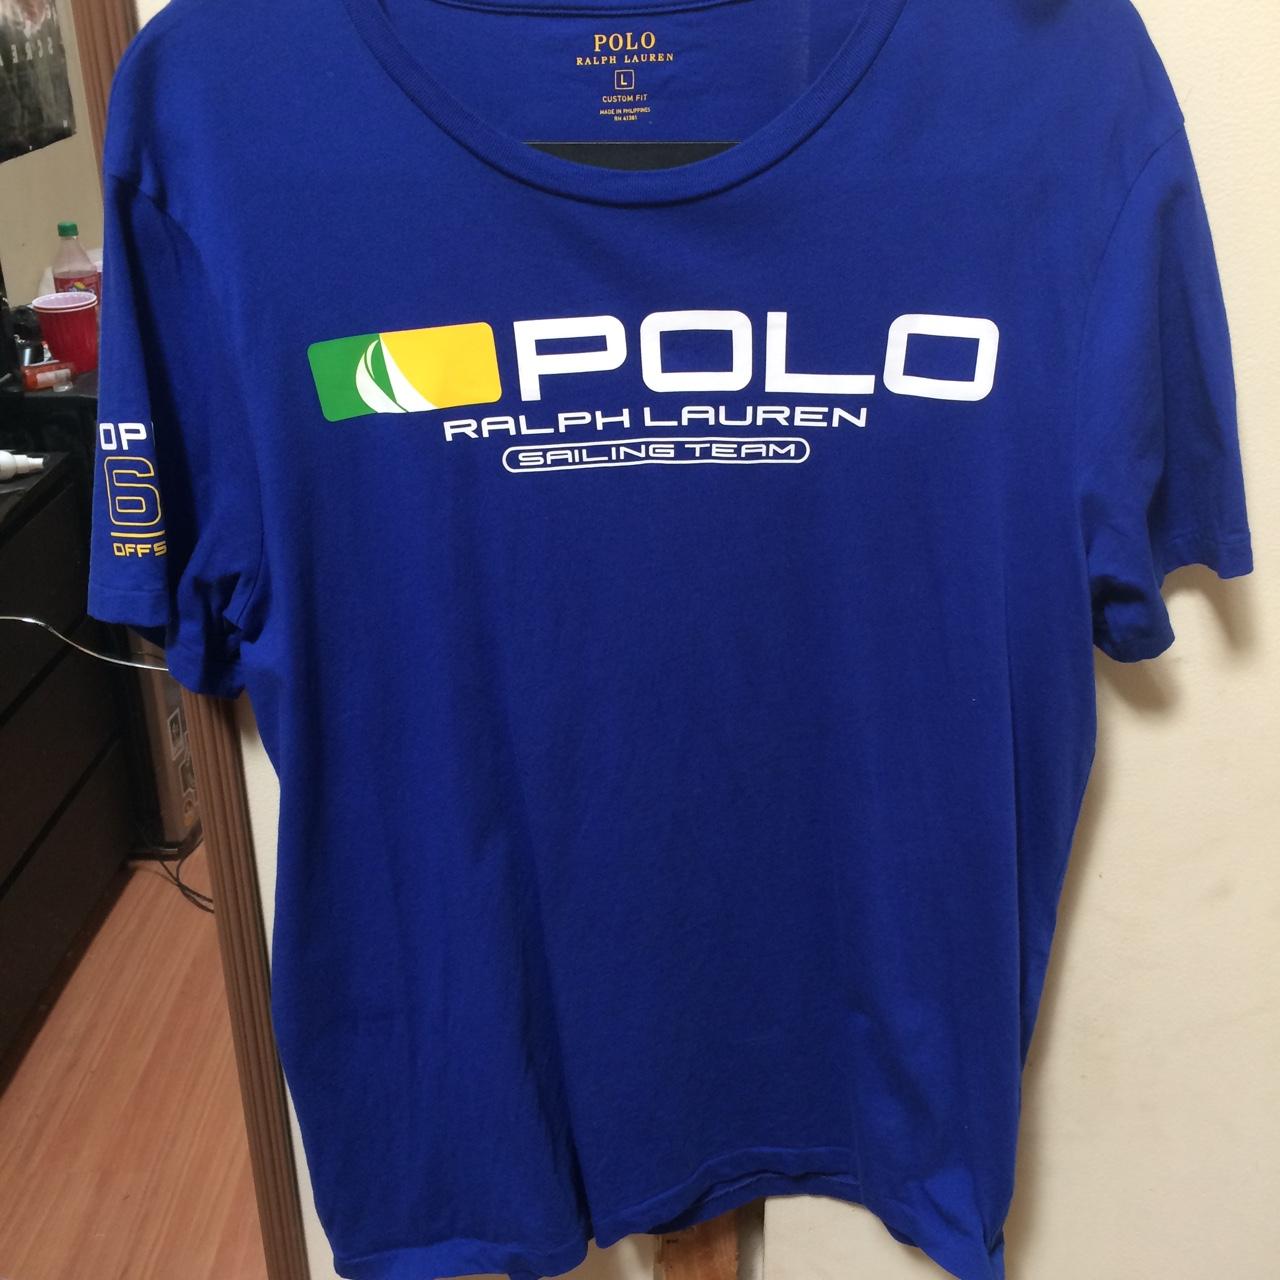 Polo Ralph Lauren sailing team t shirt , 10/10... - Depop